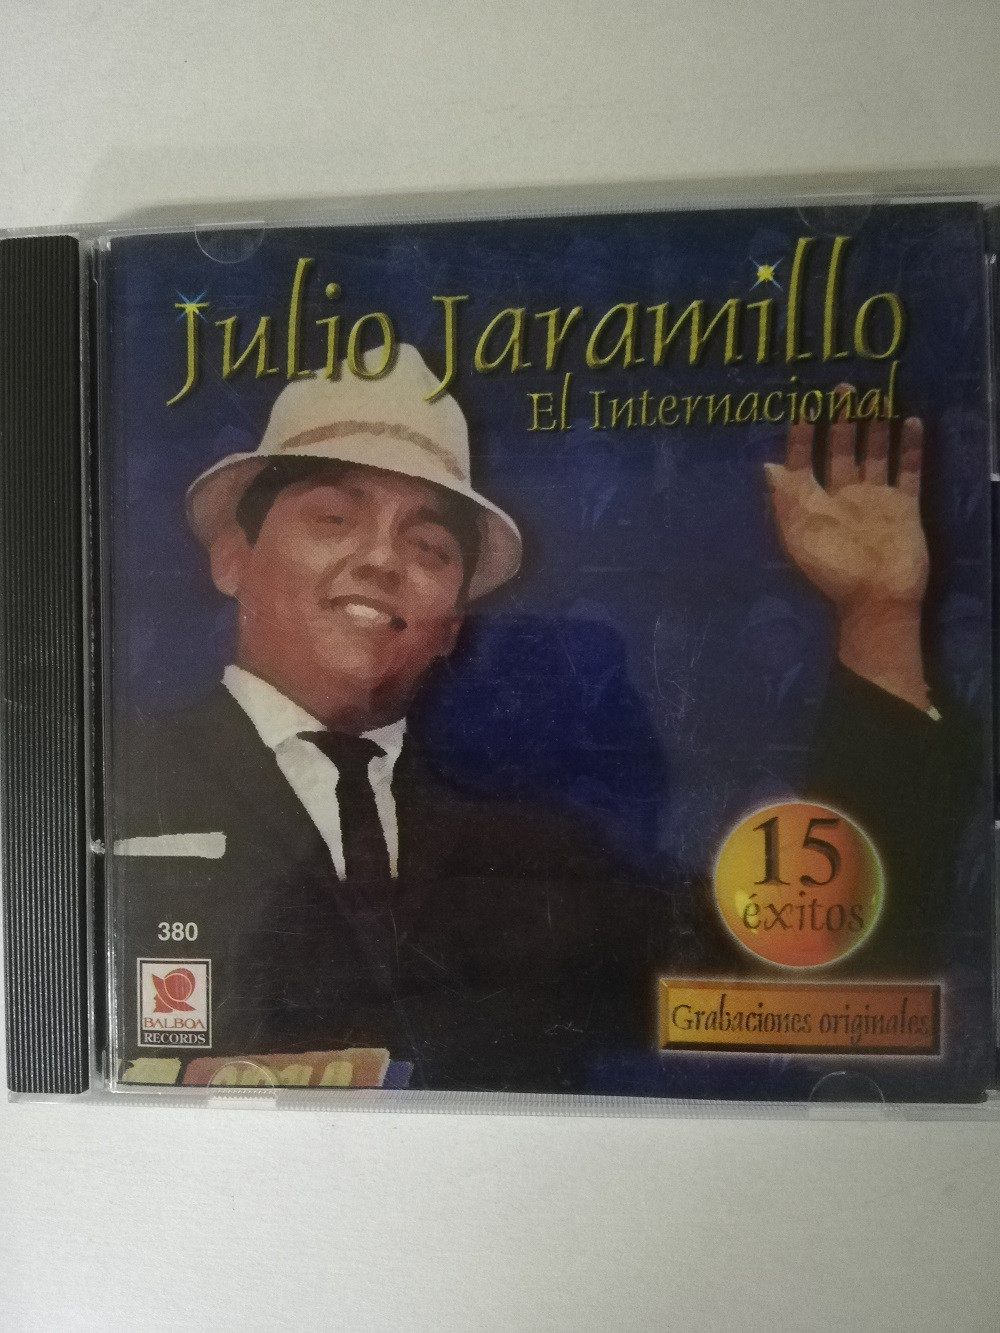 Imagen CD JULIO JARAMILLO - EL INTERNACIONAL, 15 EXITOS